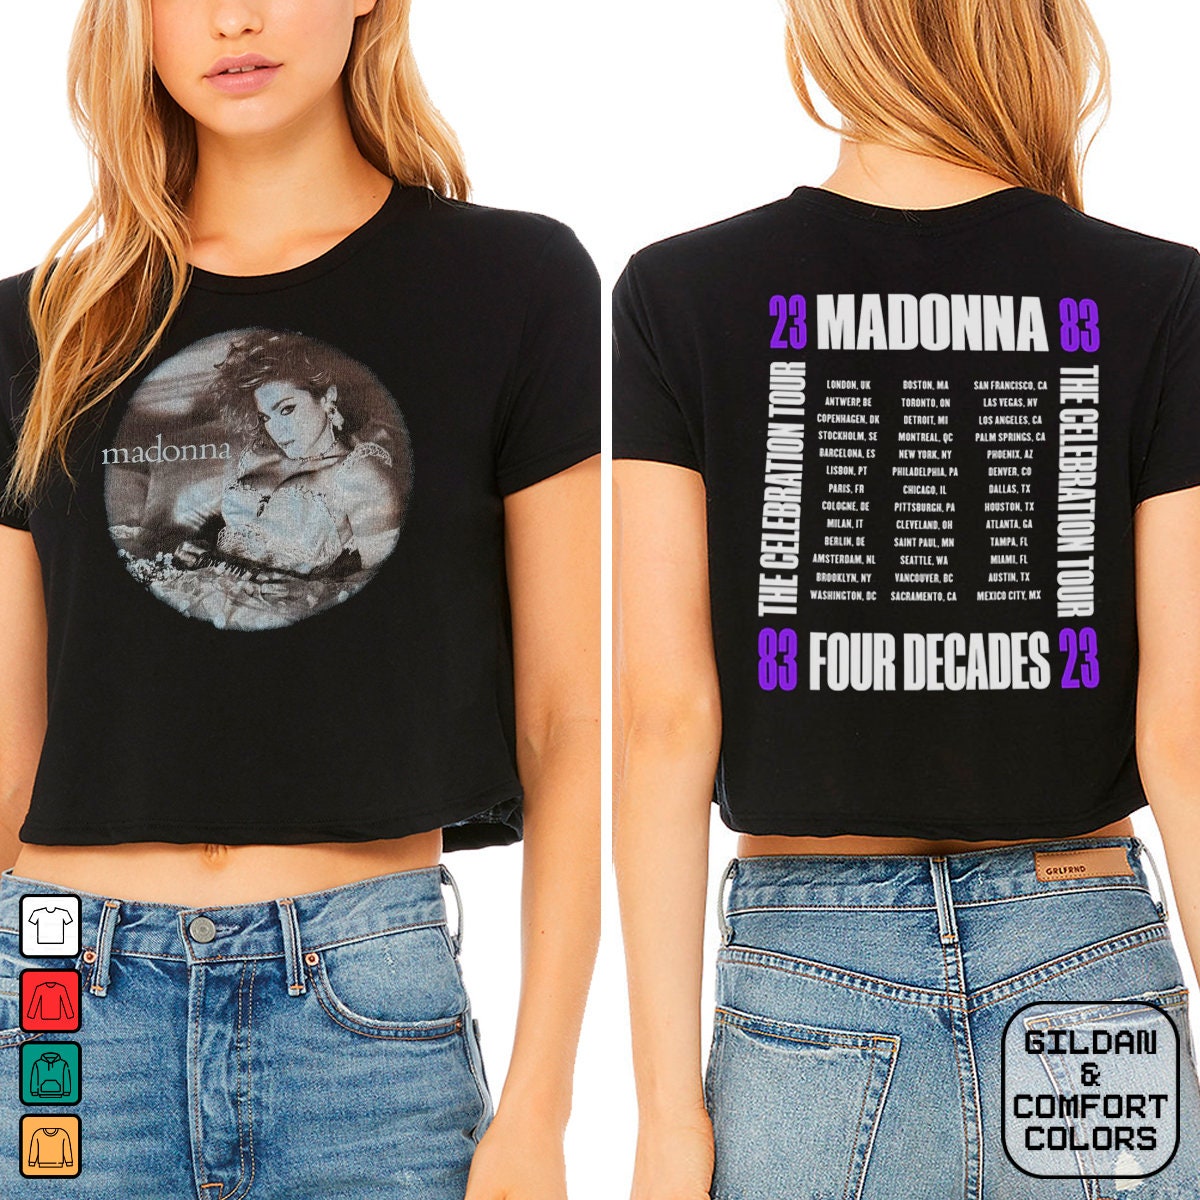 Madonna Vintage T-Shirt The Celebration Tour , Madonna The Celebration Tour Merch